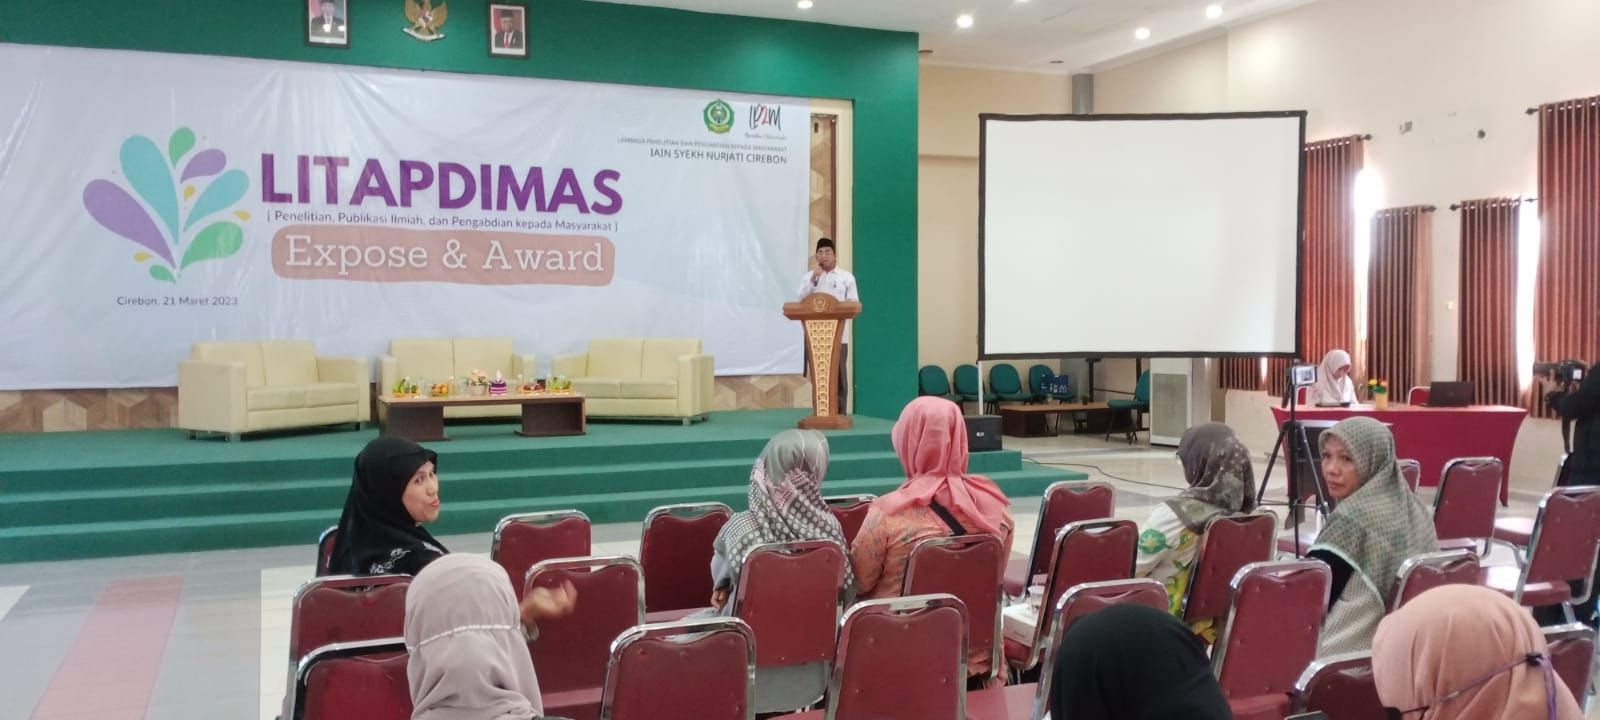 Ketua LP2M IAIN Syekh Nurjati Cirebon, H Ahmad Yani, memberikan sambutan dalam kegiatan Litapdimas.